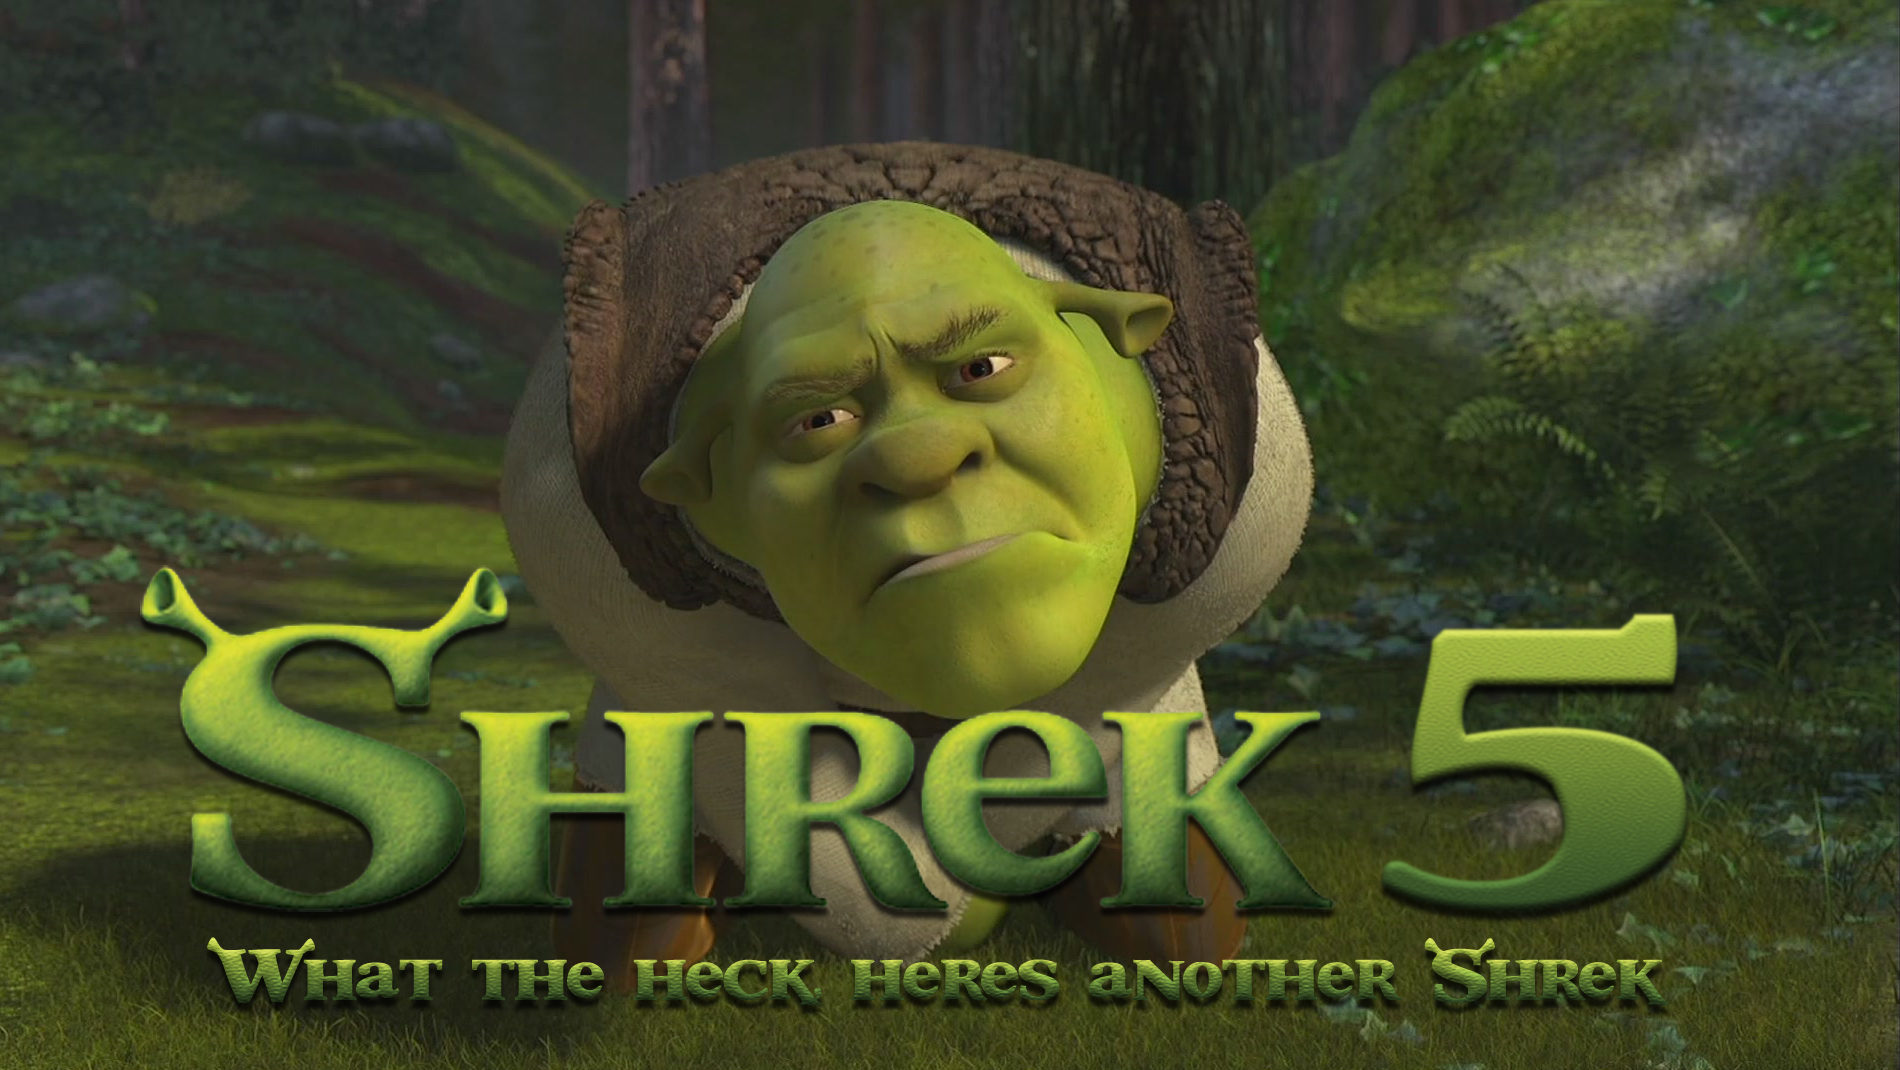 Shrek 5 release date cast